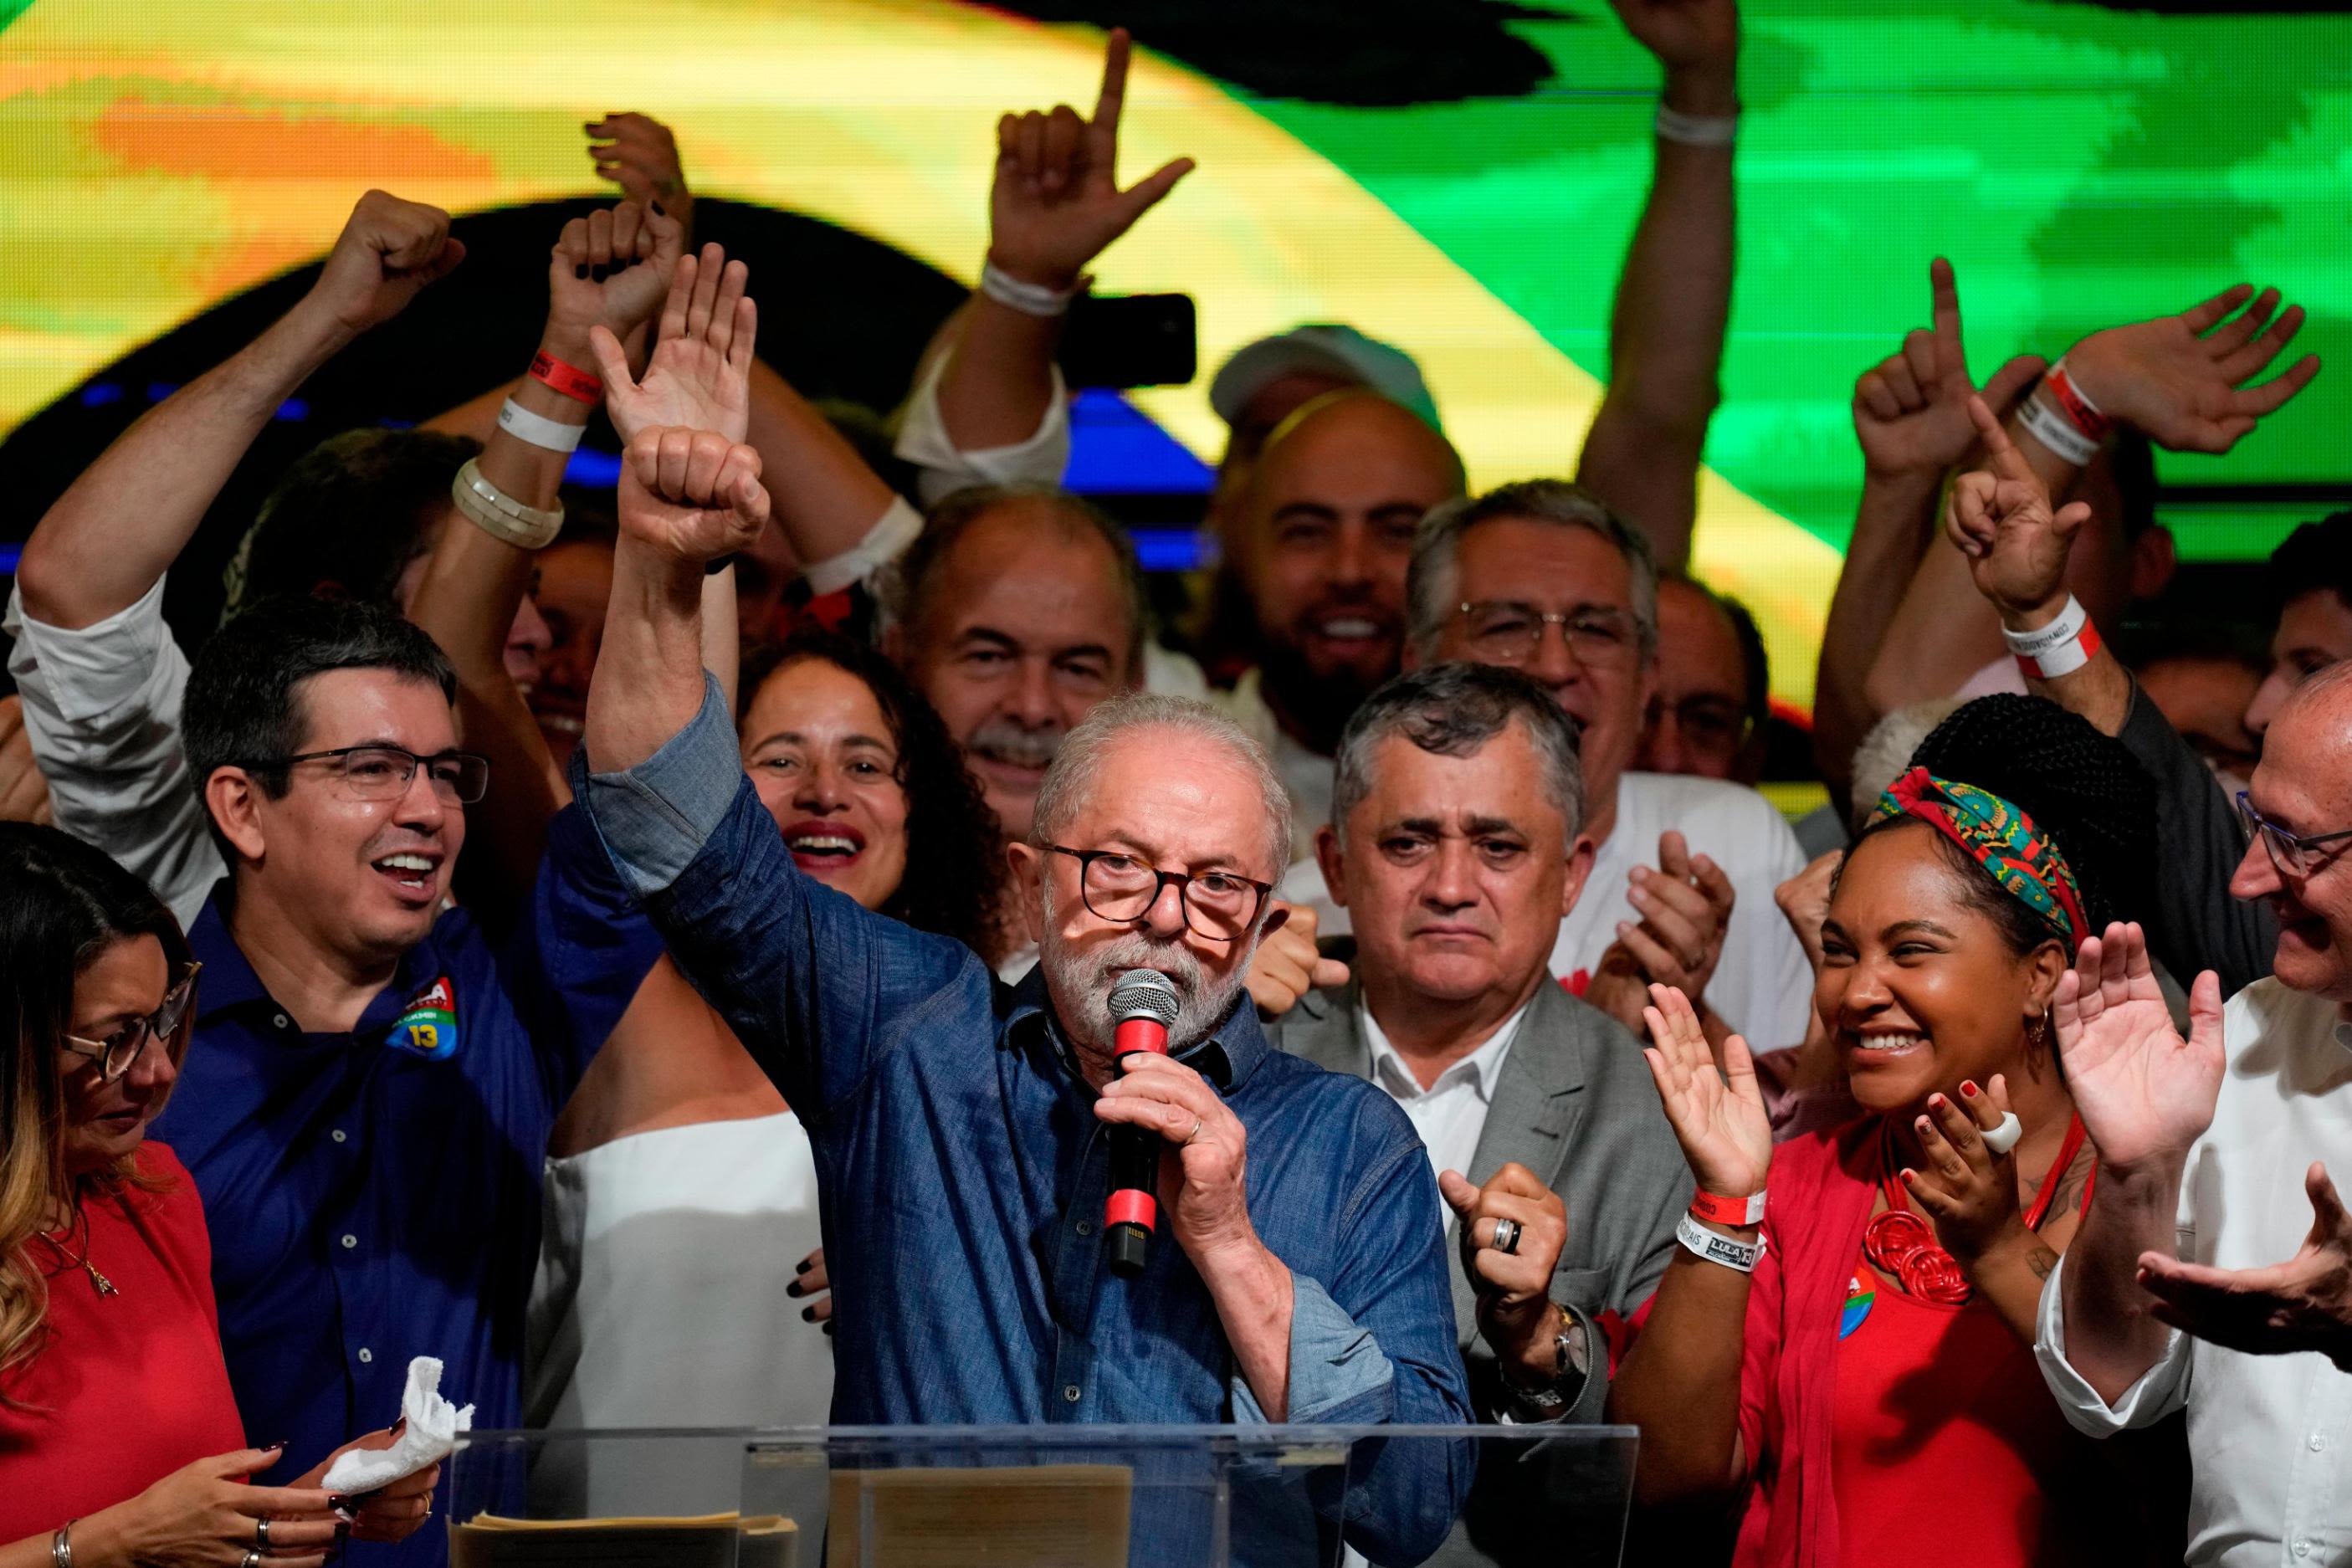 Trump of South America' to take office in Brazil, ushering in